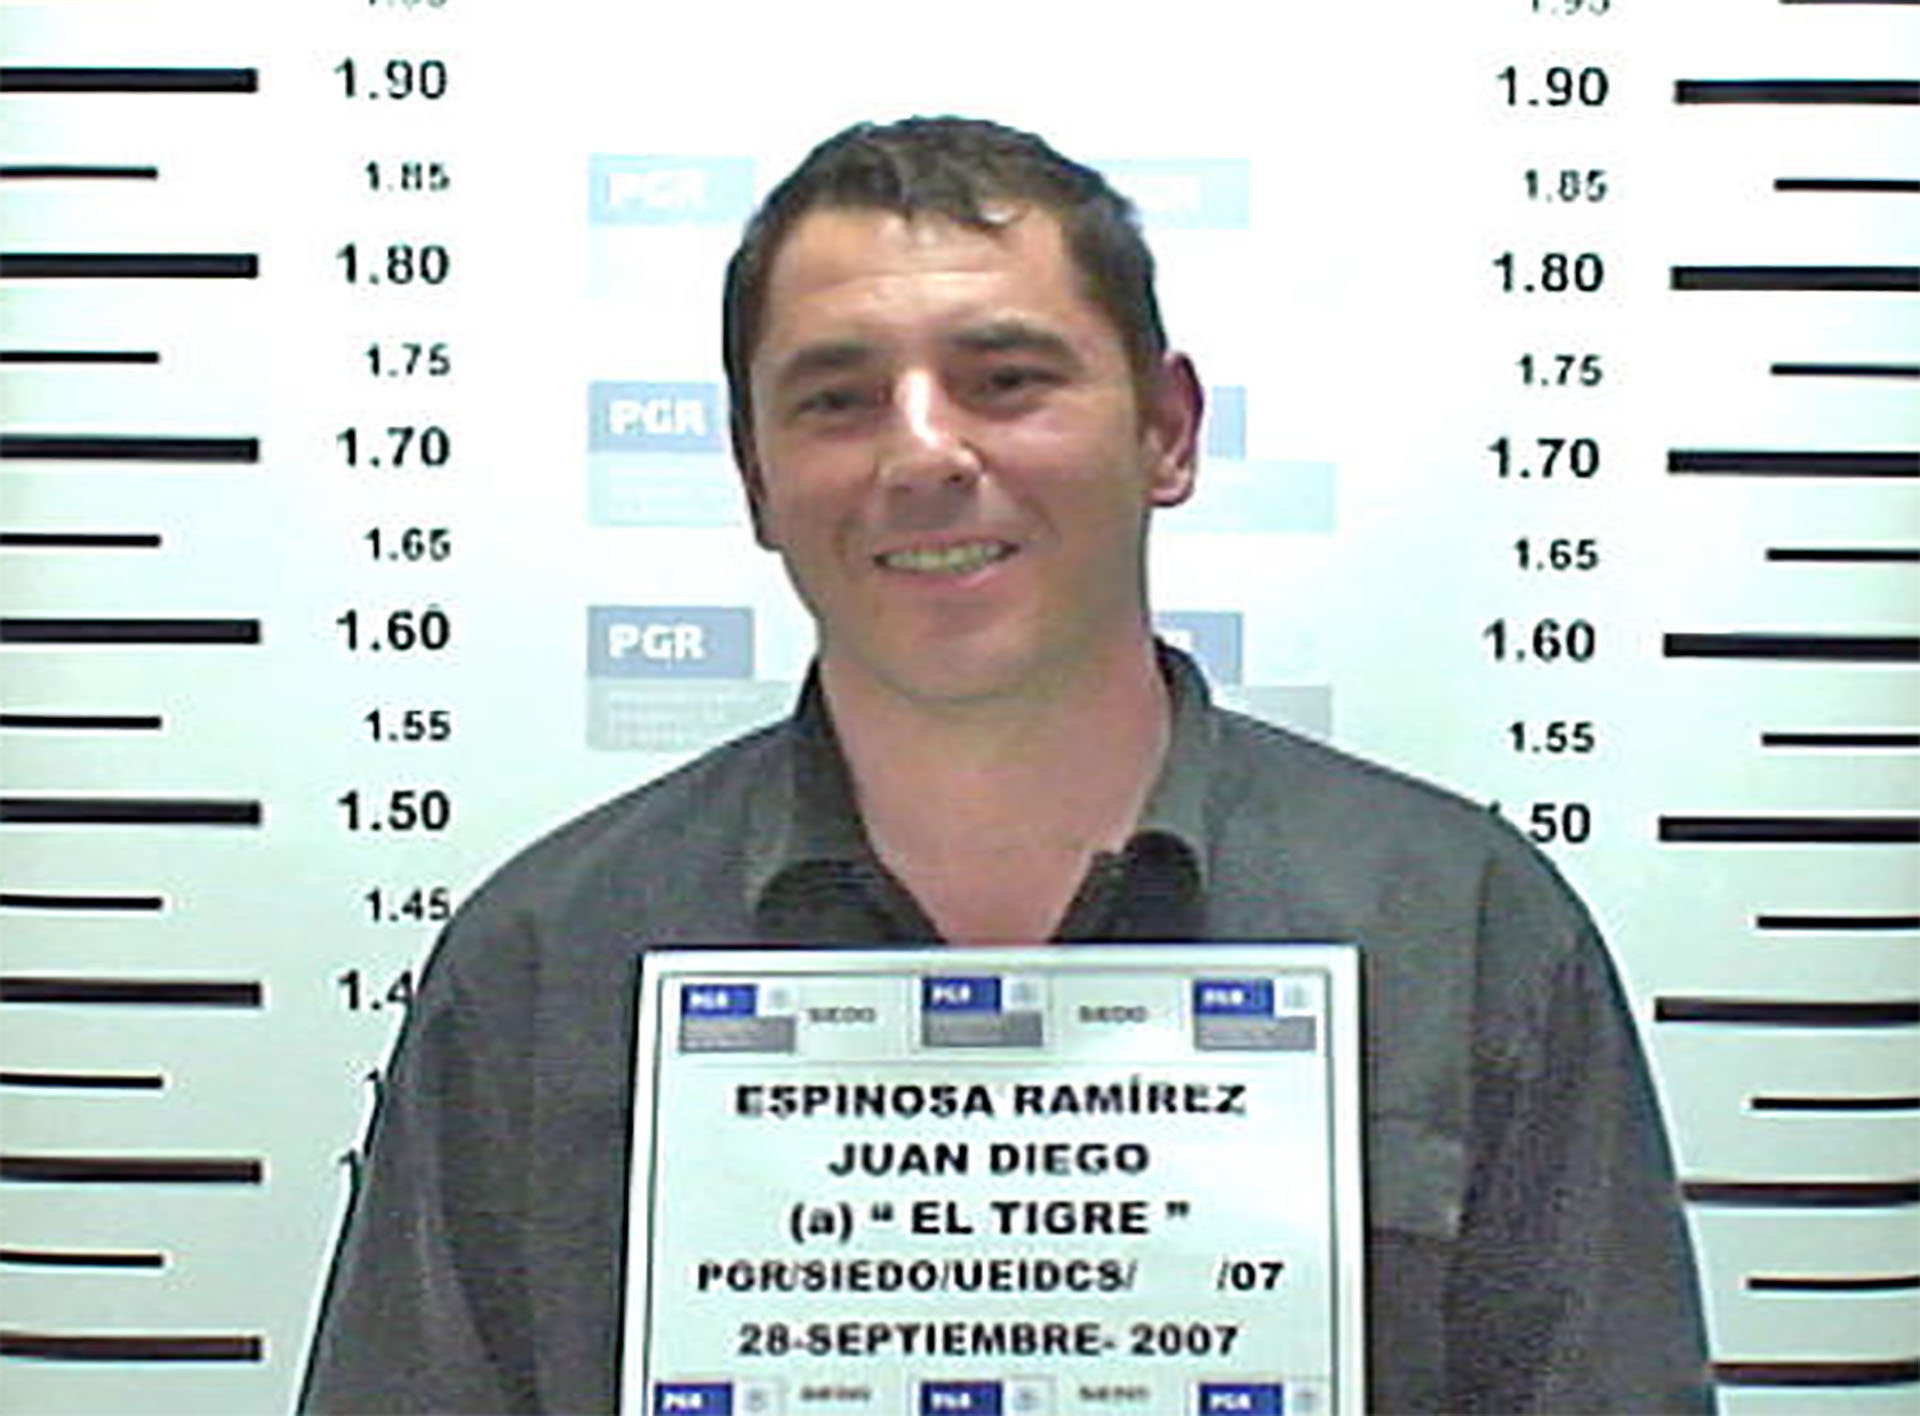 Juan Diego Espinosa Ramírez, El tigre, second most important man in the Valle del Norte cartel in Colombia and sentimental partner of Sandra Ávila.